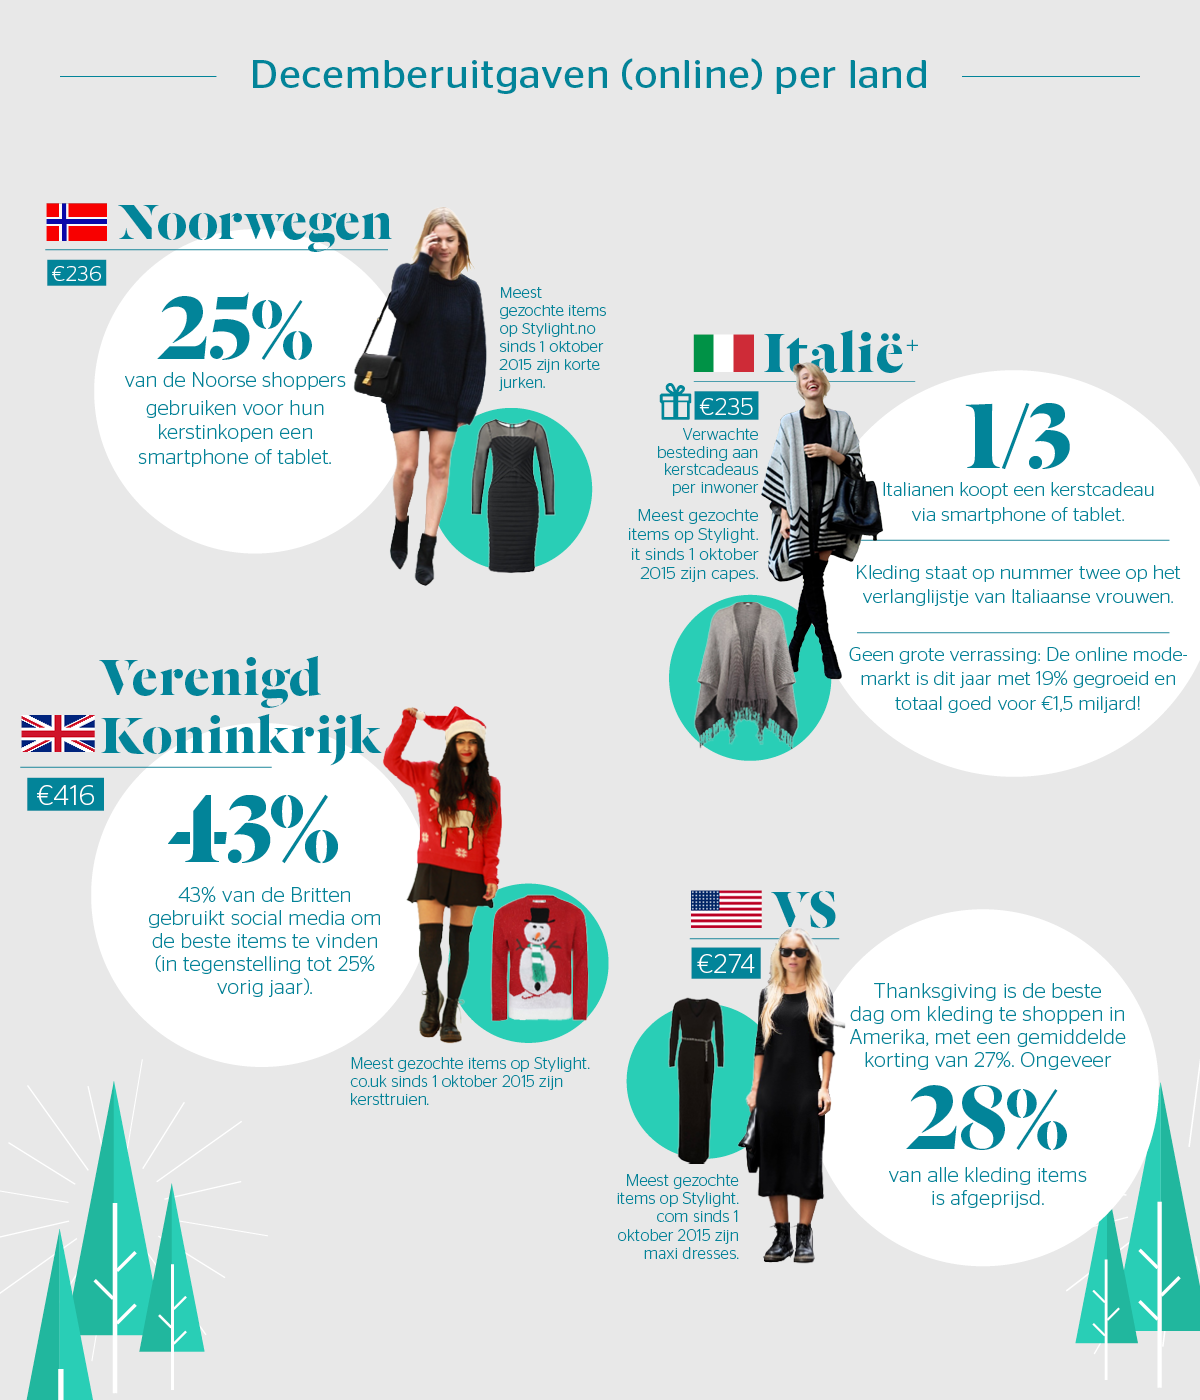 Feiten cijfers en mode items voor Noorwegen Italie VS en UK door Stylight